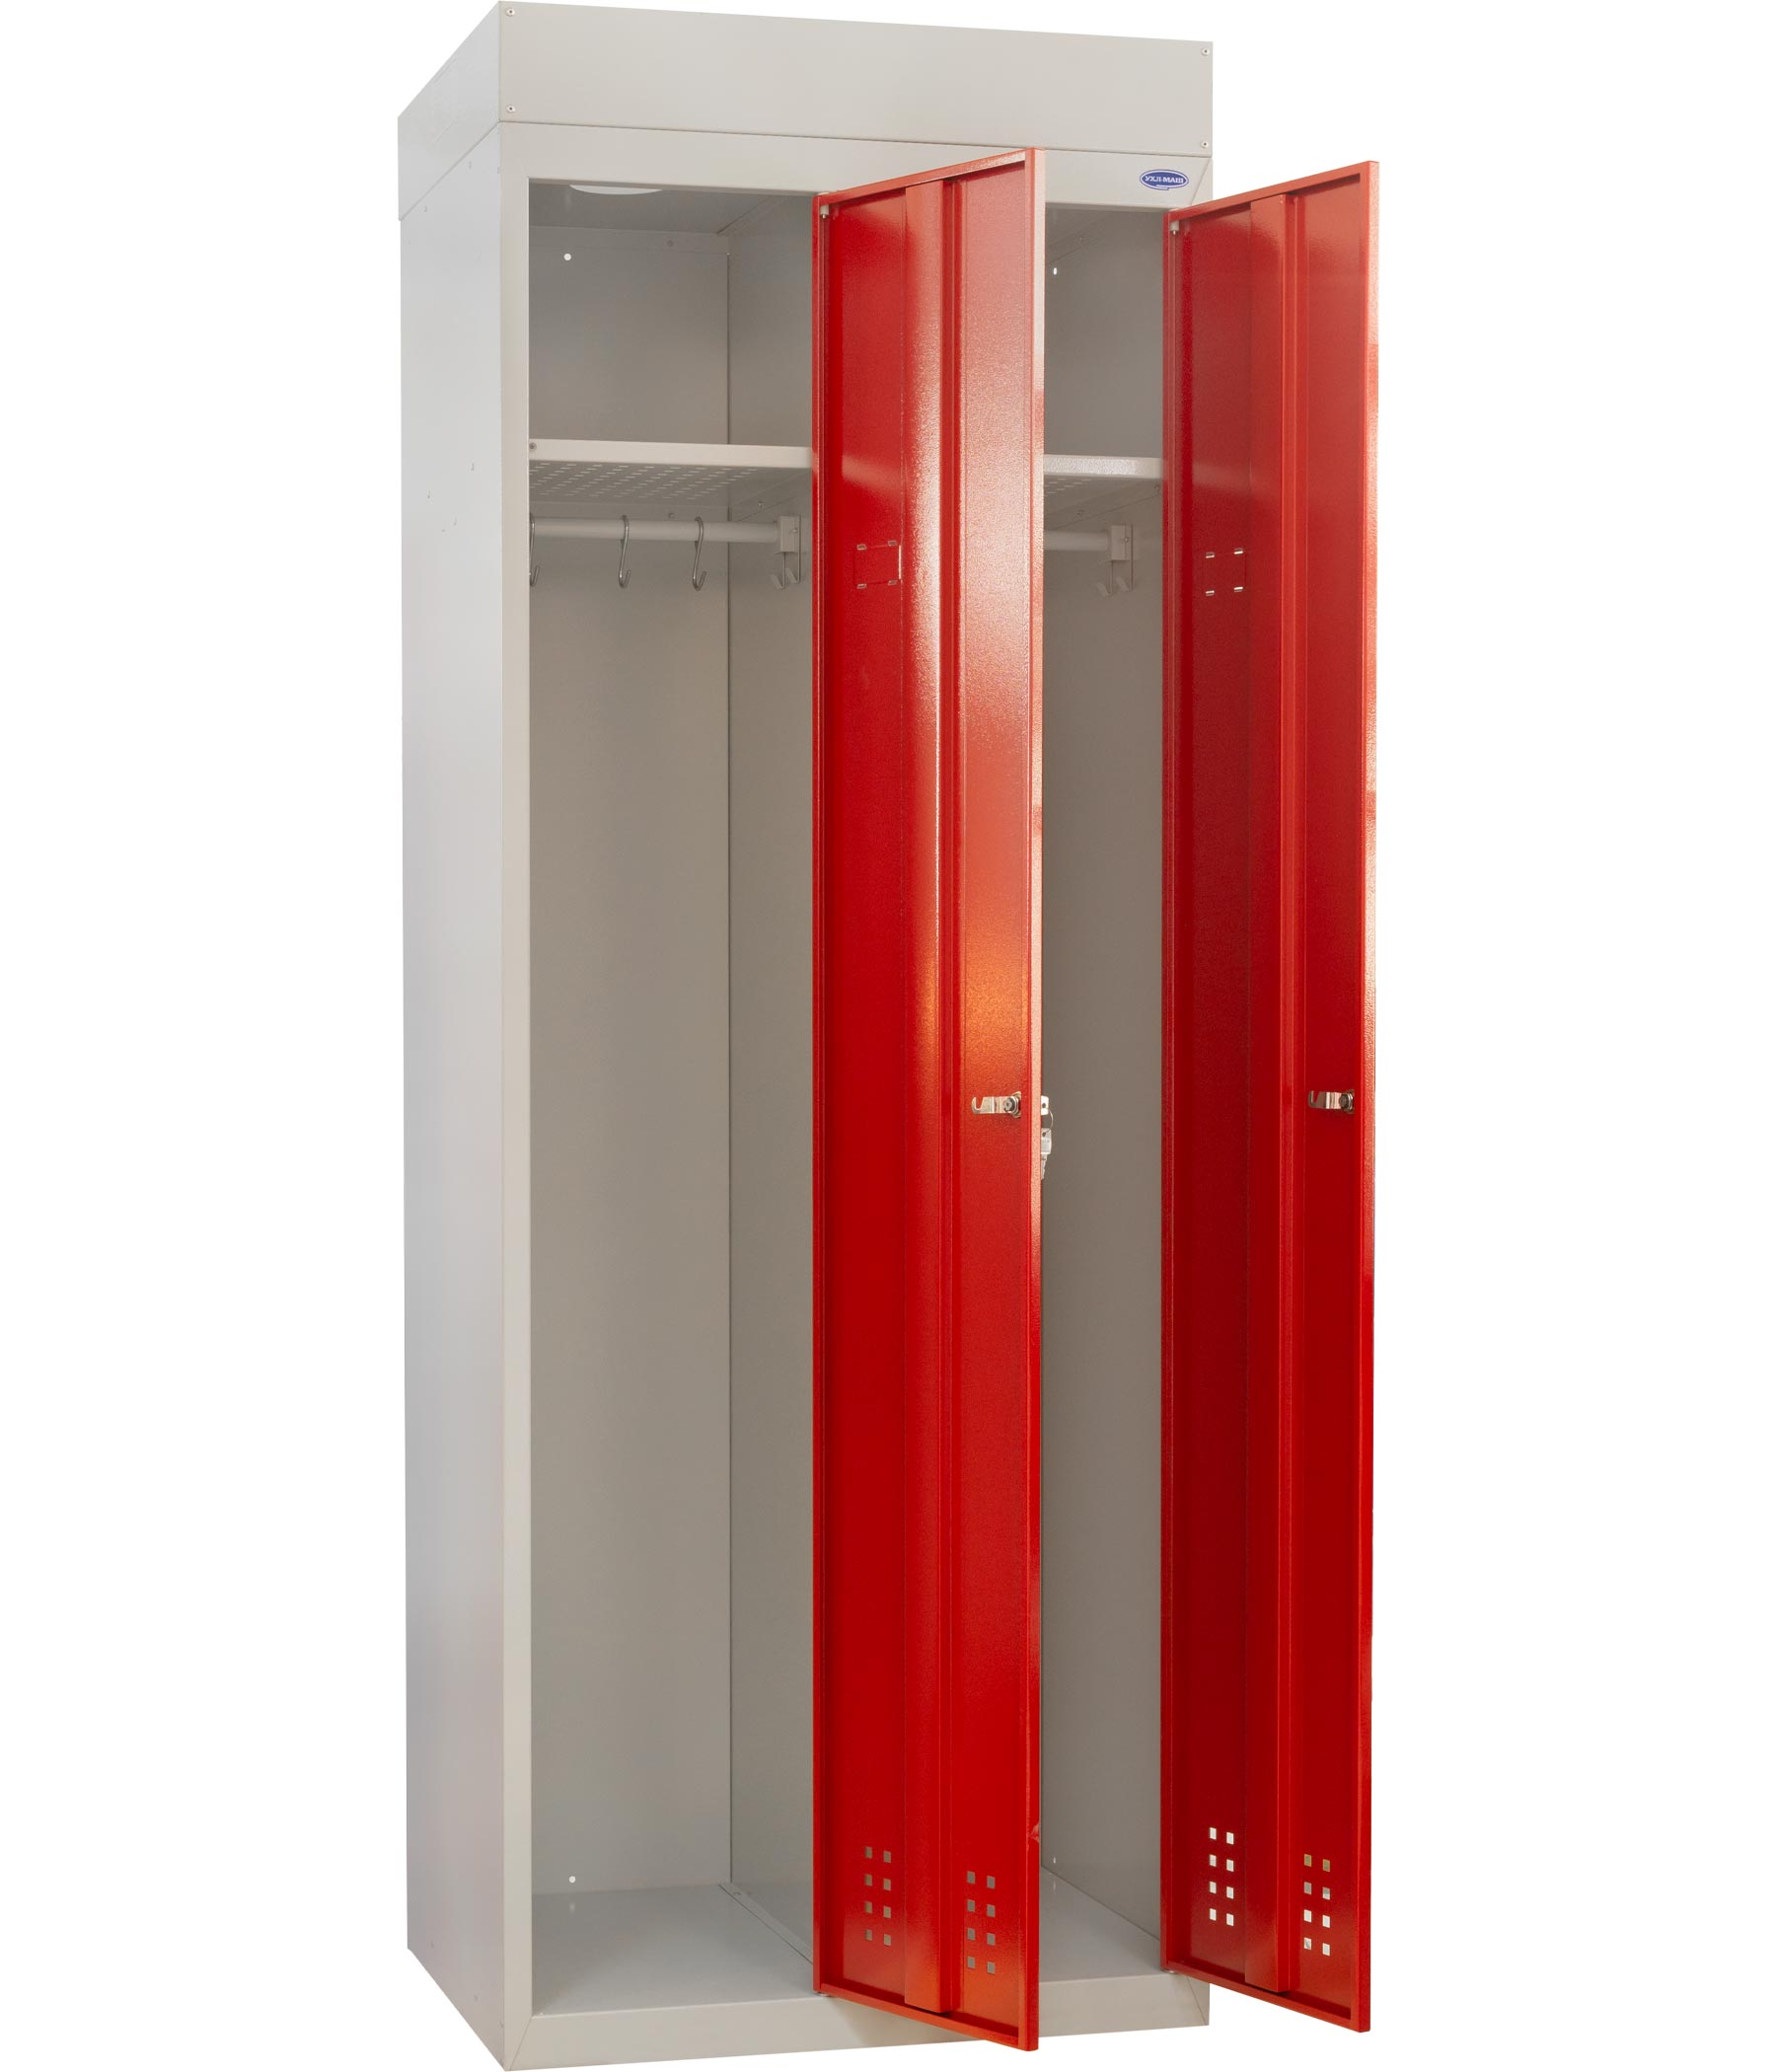 Шкаф одежный специальный с вентиляционной системой 1800hх800х500